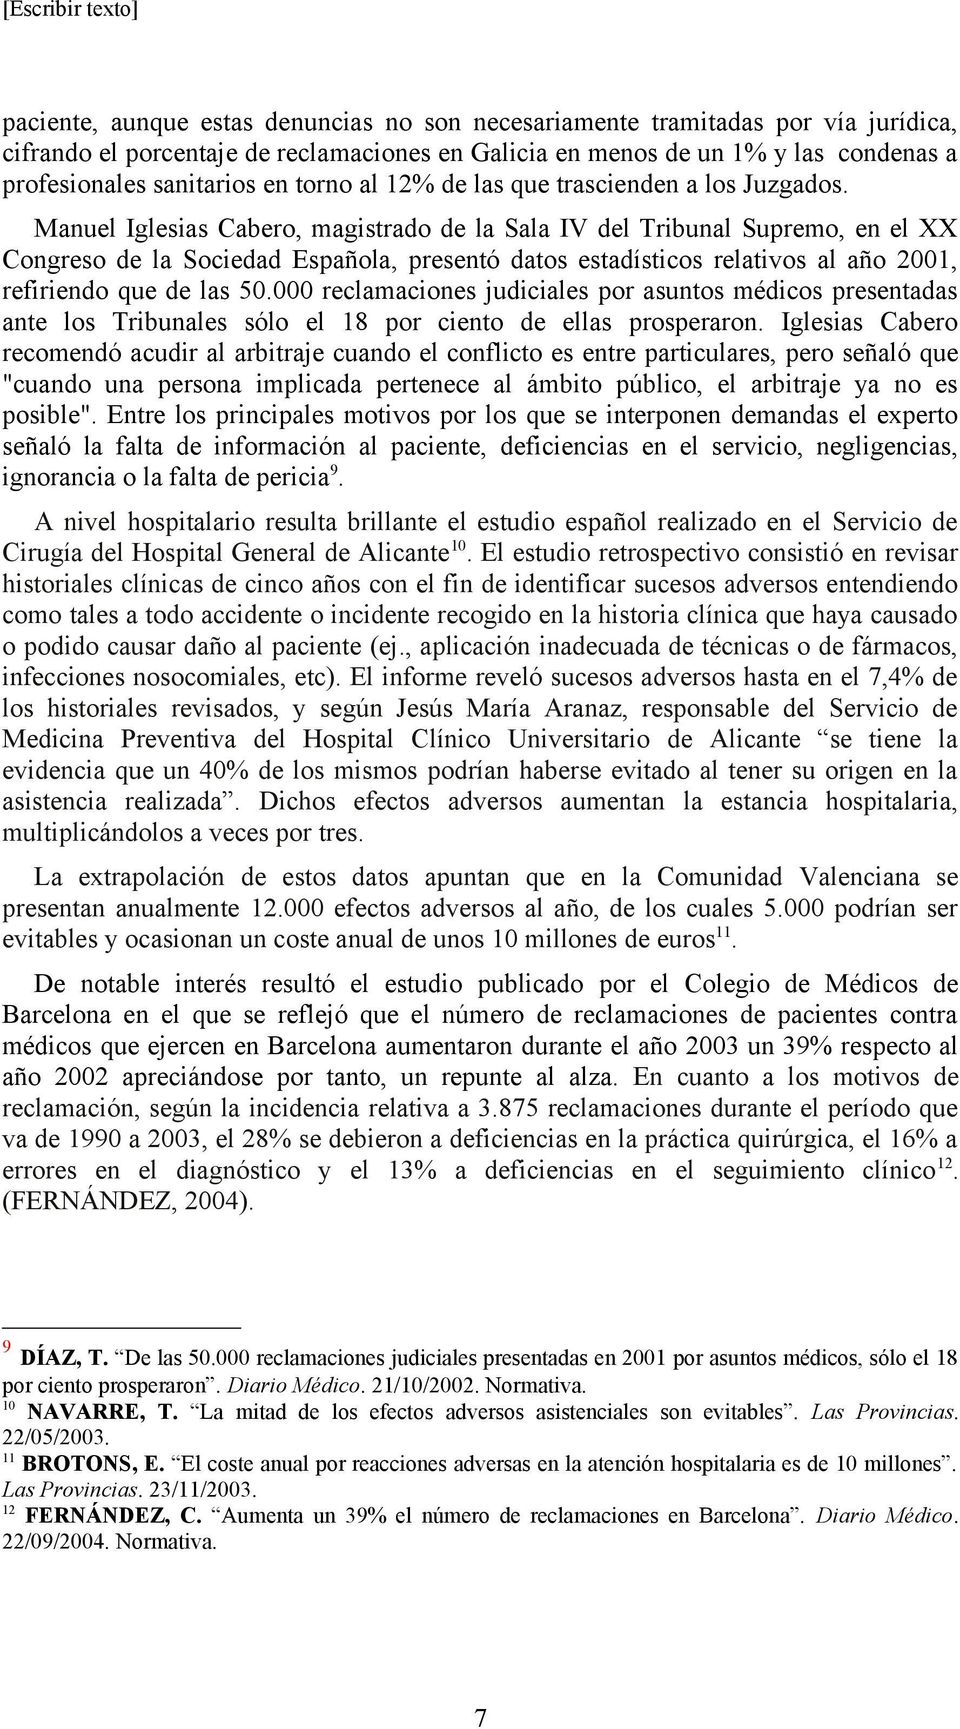 Manuel Iglesias Cabero, magistrado de la Sala IV del Tribunal Supremo, en el XX Congreso de la Sociedad Española, presentó datos estadísticos relativos al año 2001, refiriendo que de las 50.